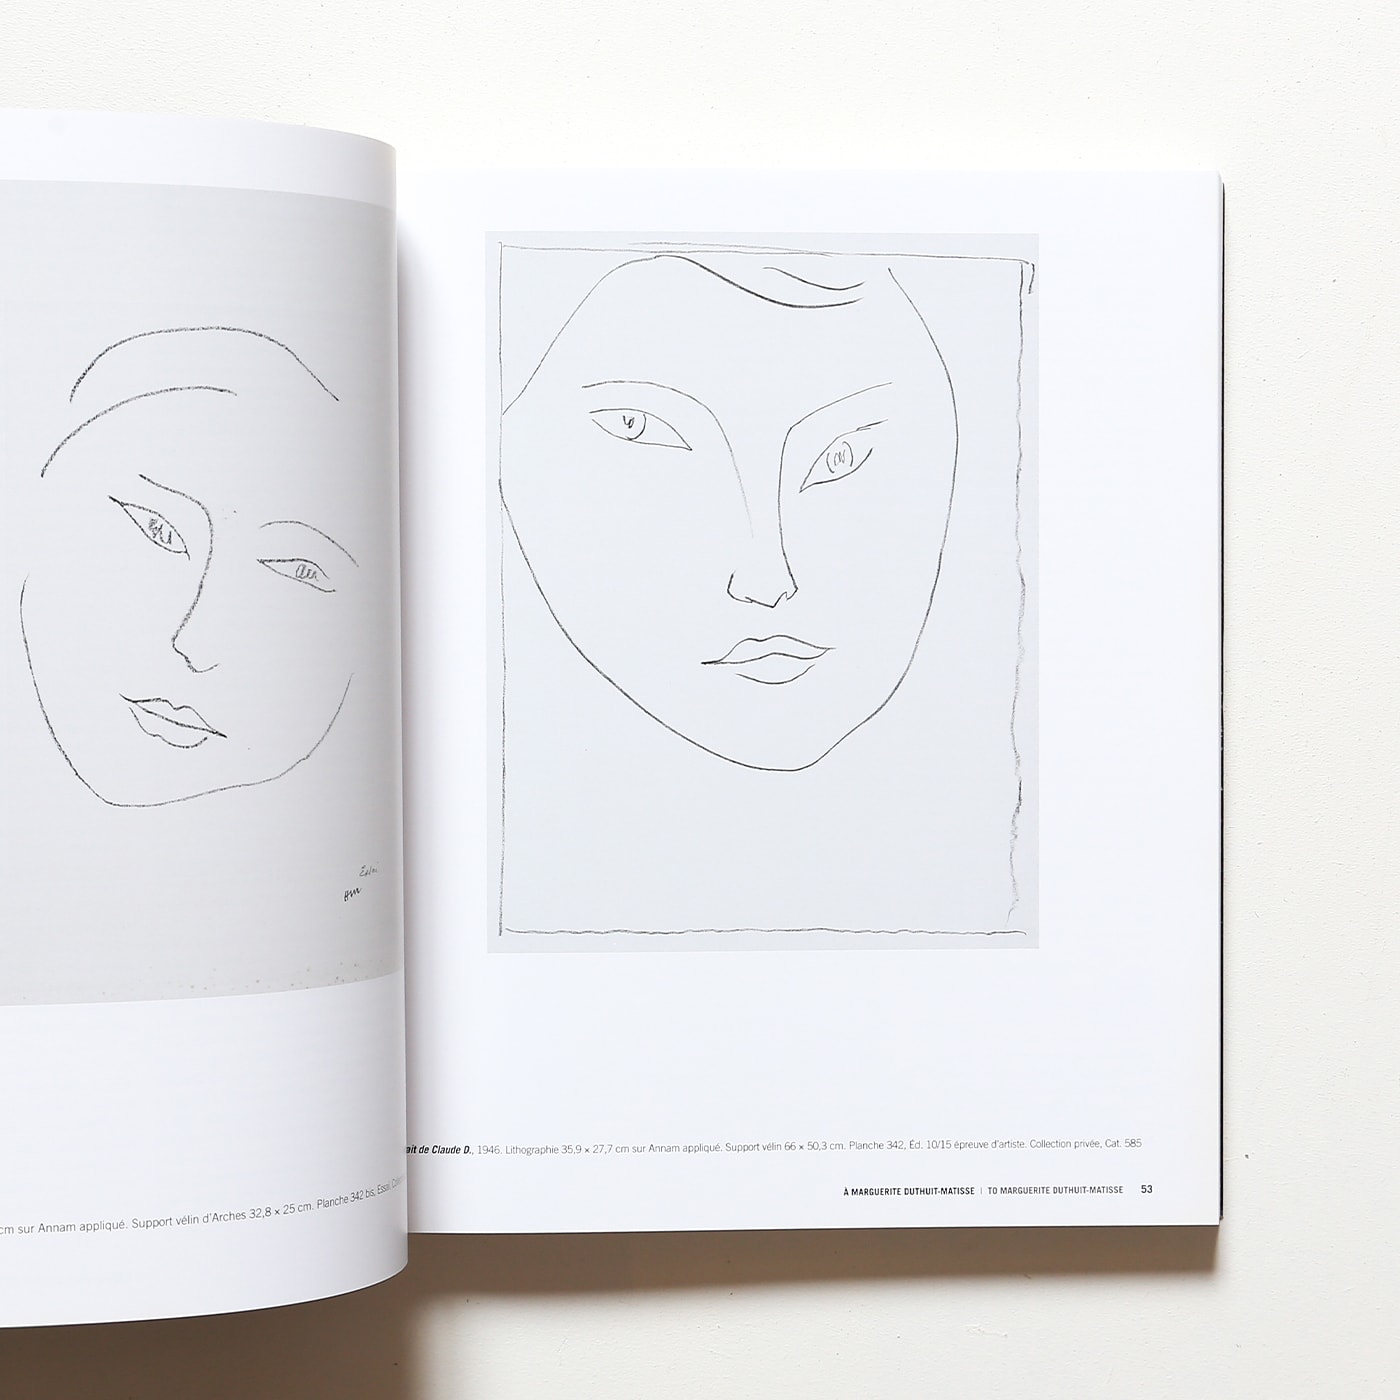 Henri Matisse: Matisse and Engraving